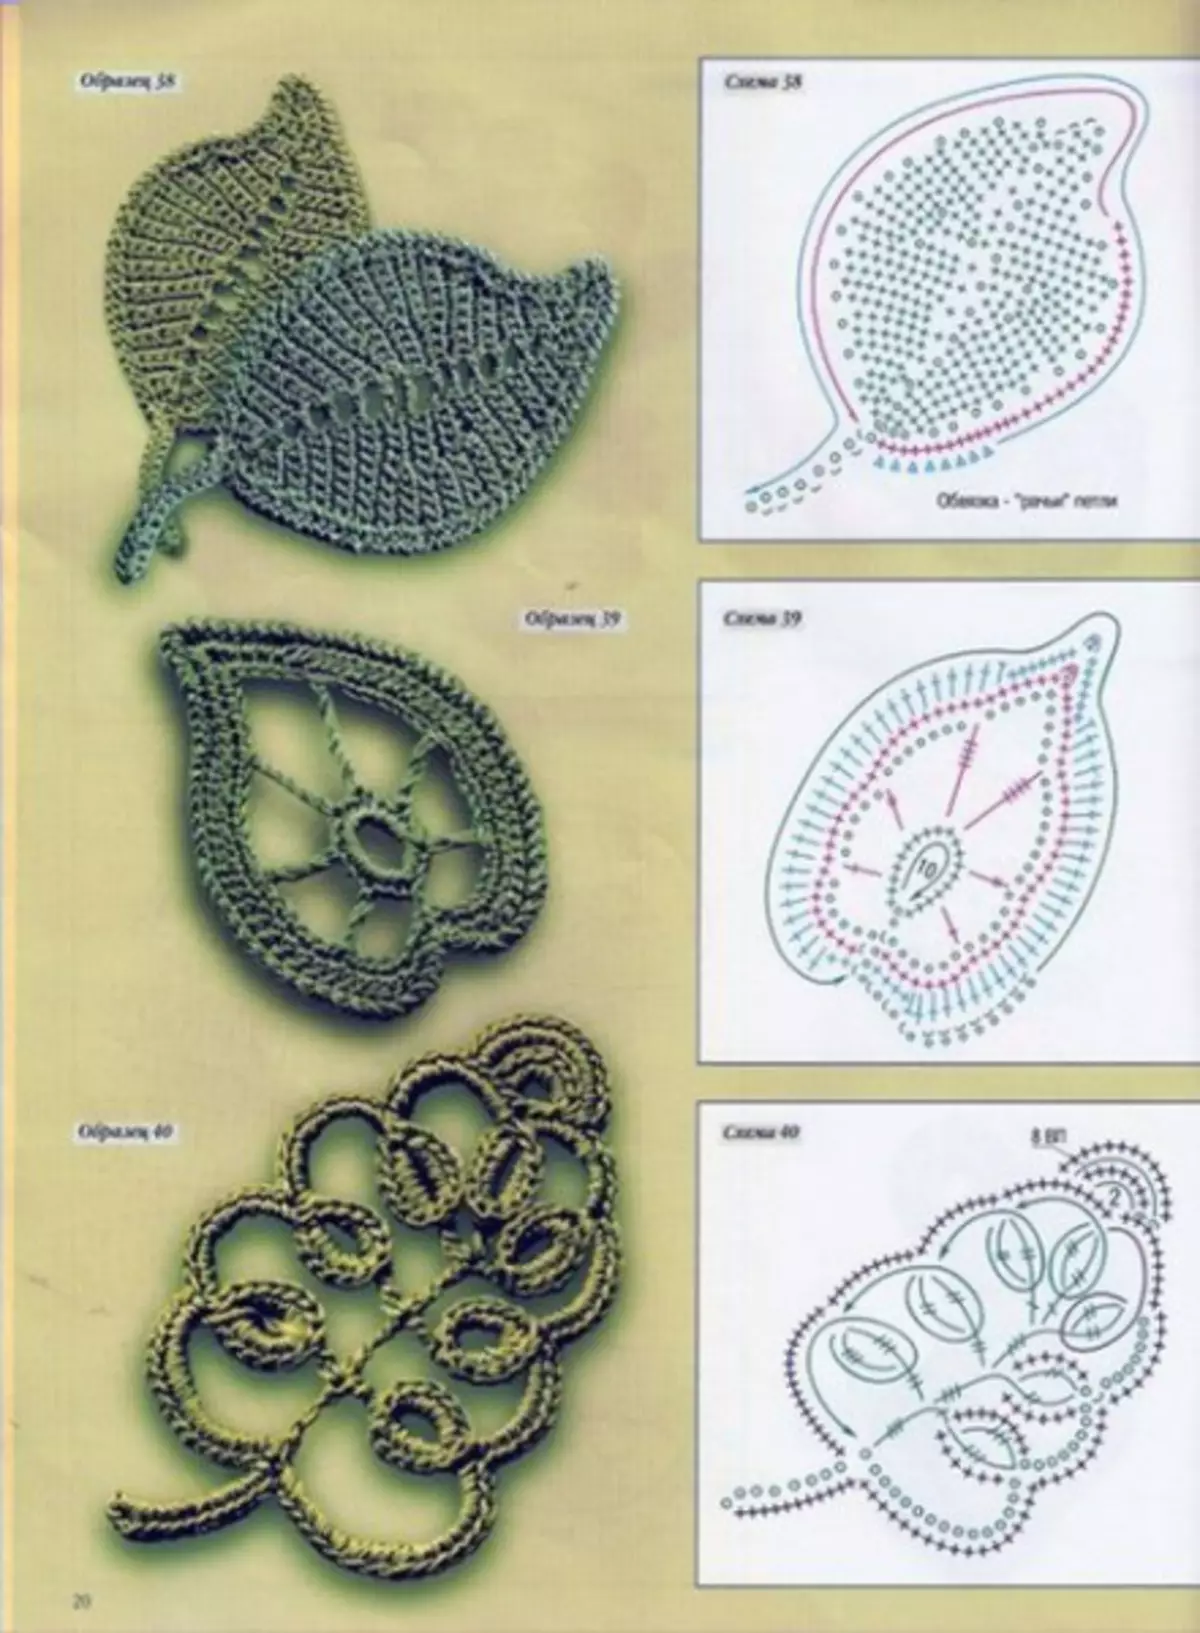 Crochet Leaf ine chirongwa: Master kirasi ne tsananguro uye vhidhiyo